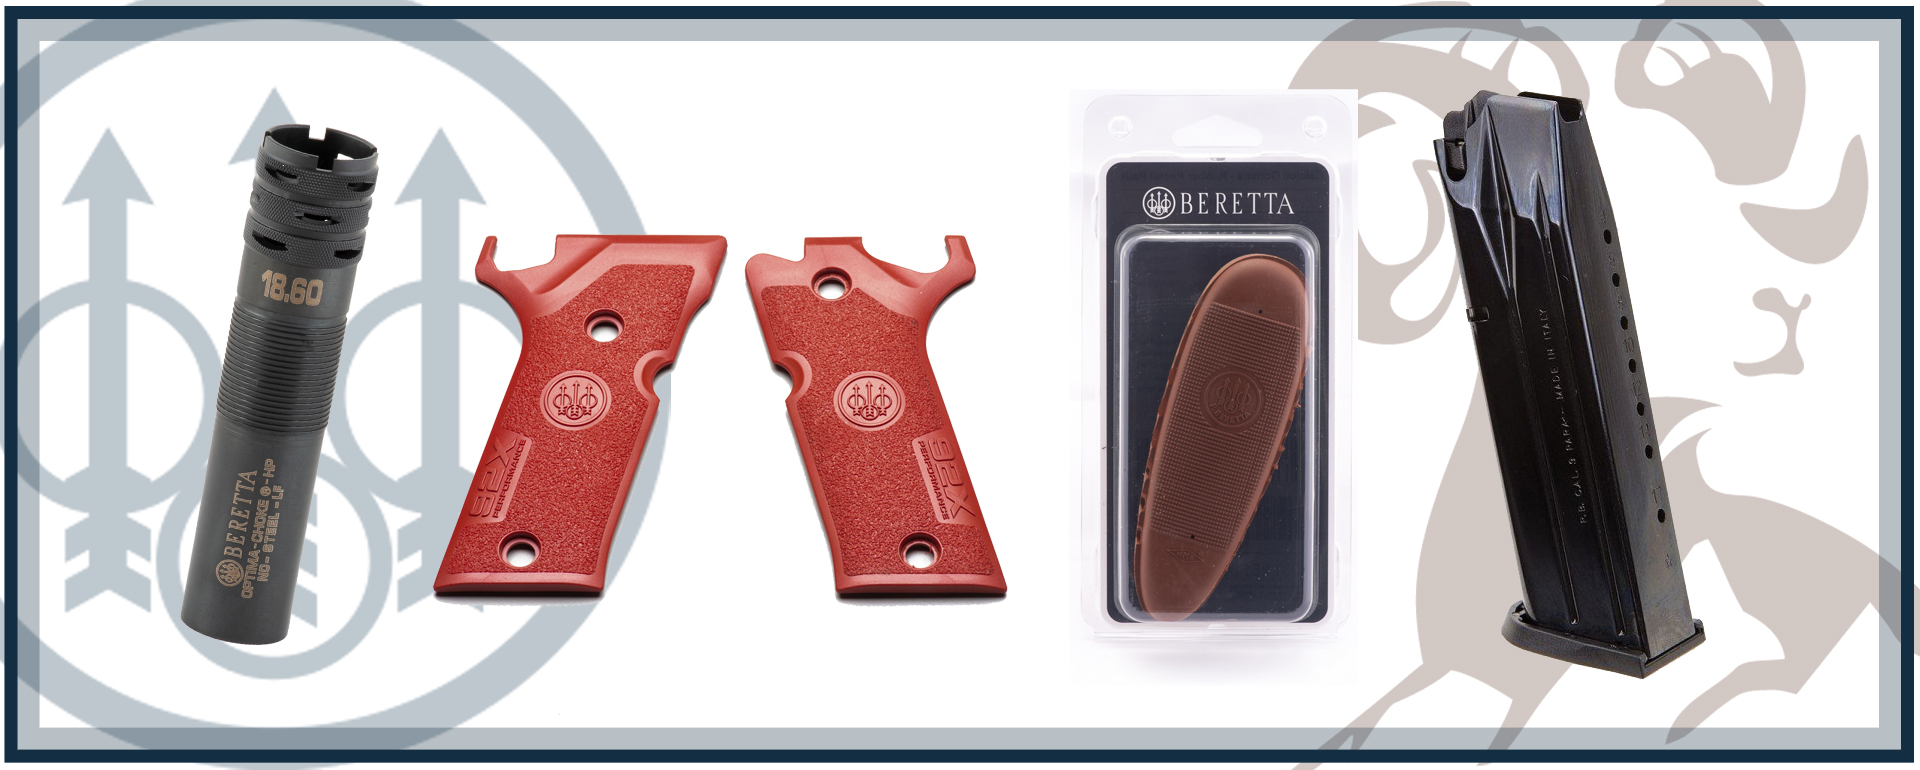 Oltre 300 accessori Beretta ora disponibili su Brownells.it